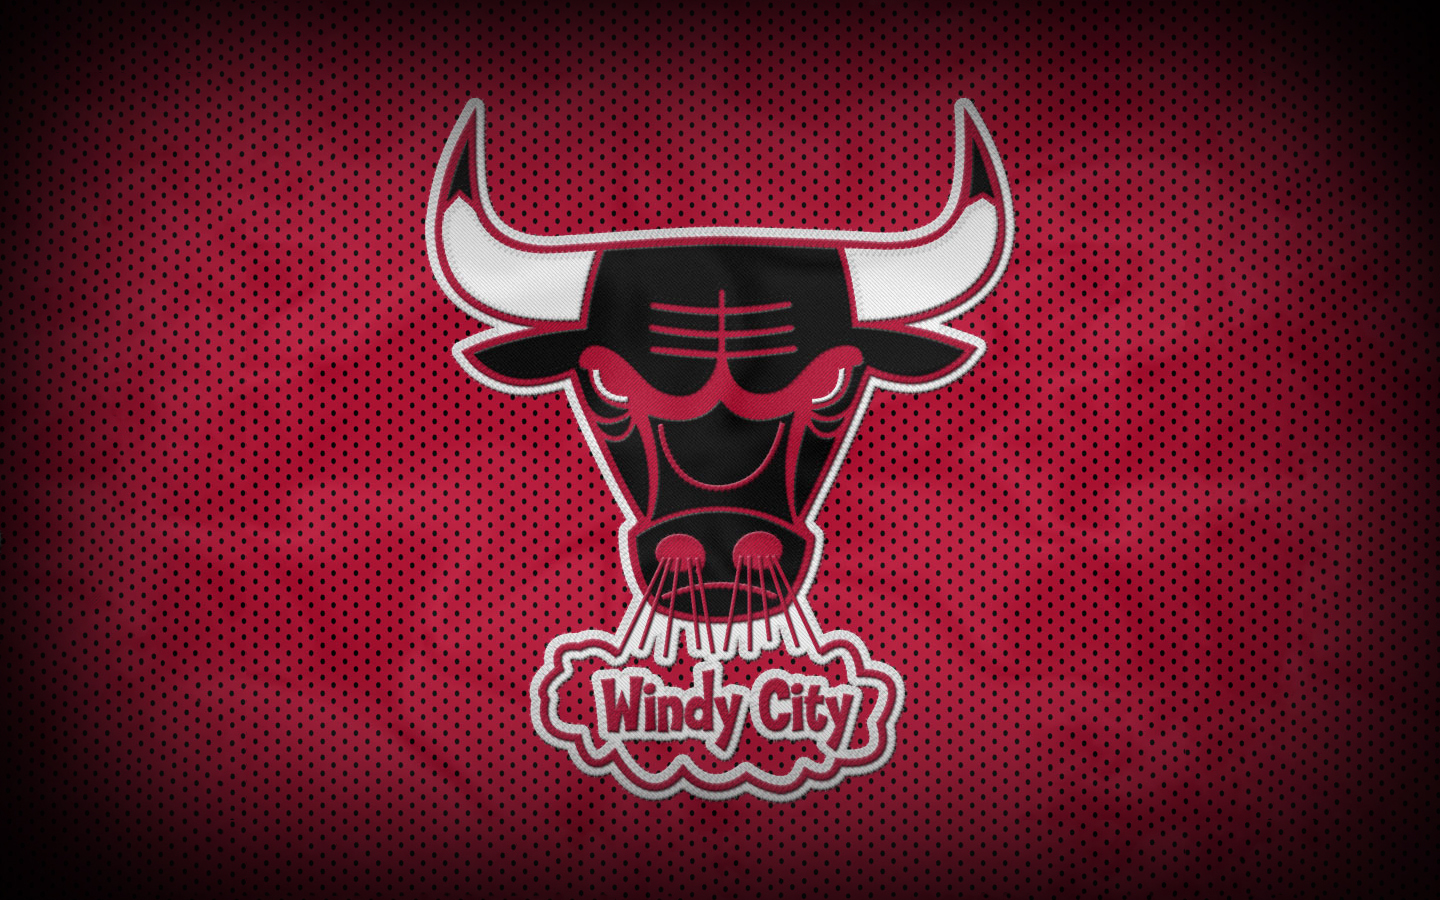 1000+ ideas about Bulls Wallpaper on Pinterest | Chicago bulls